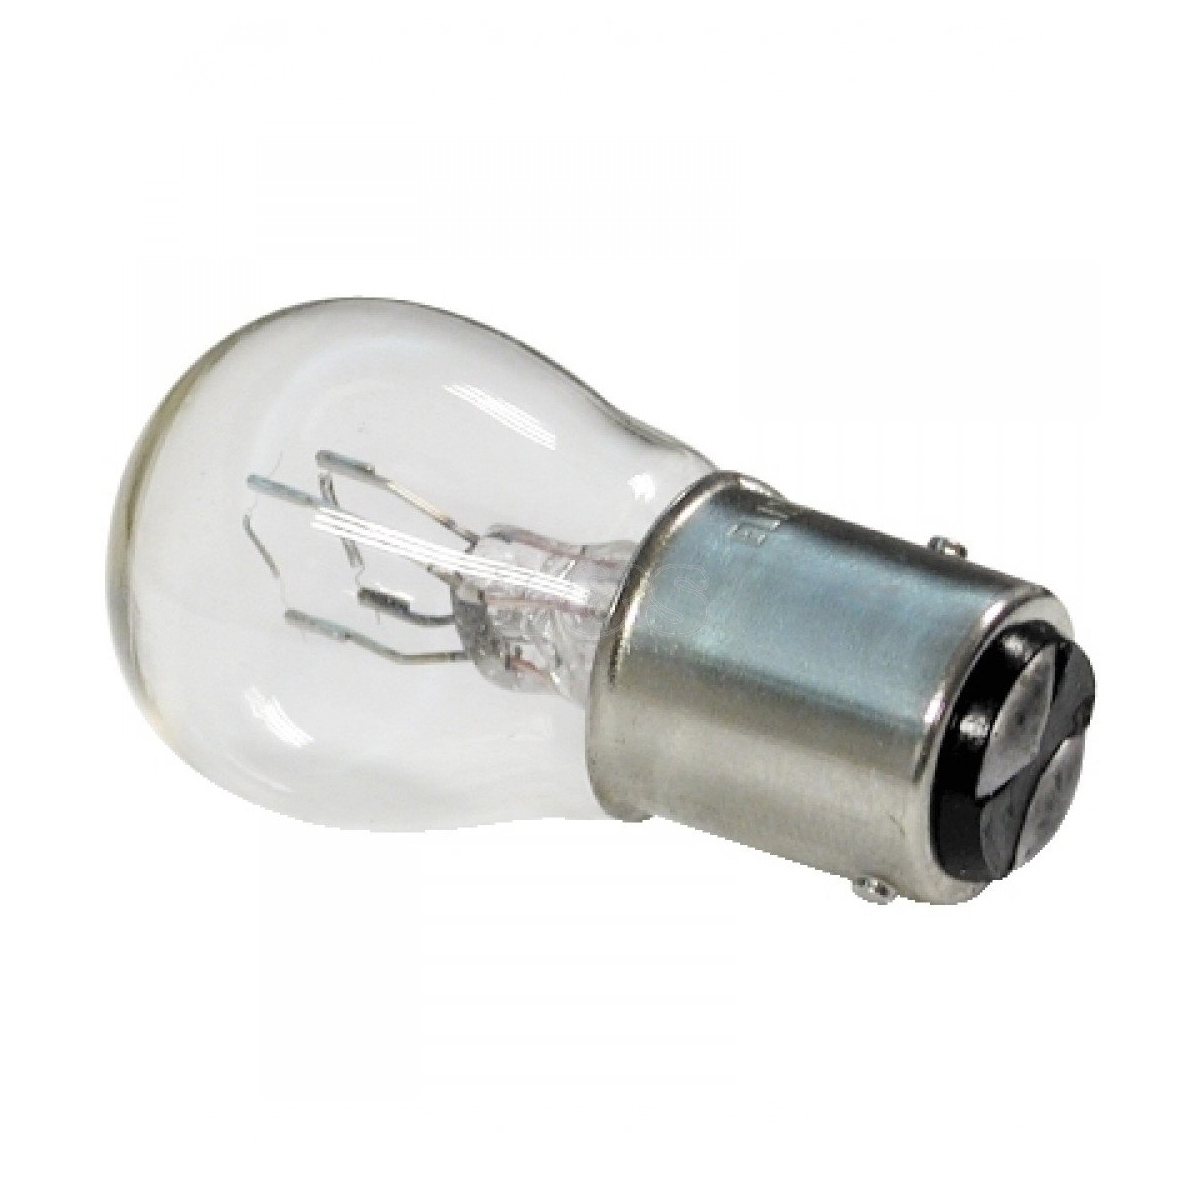 Auxillary Stop Light Bulb